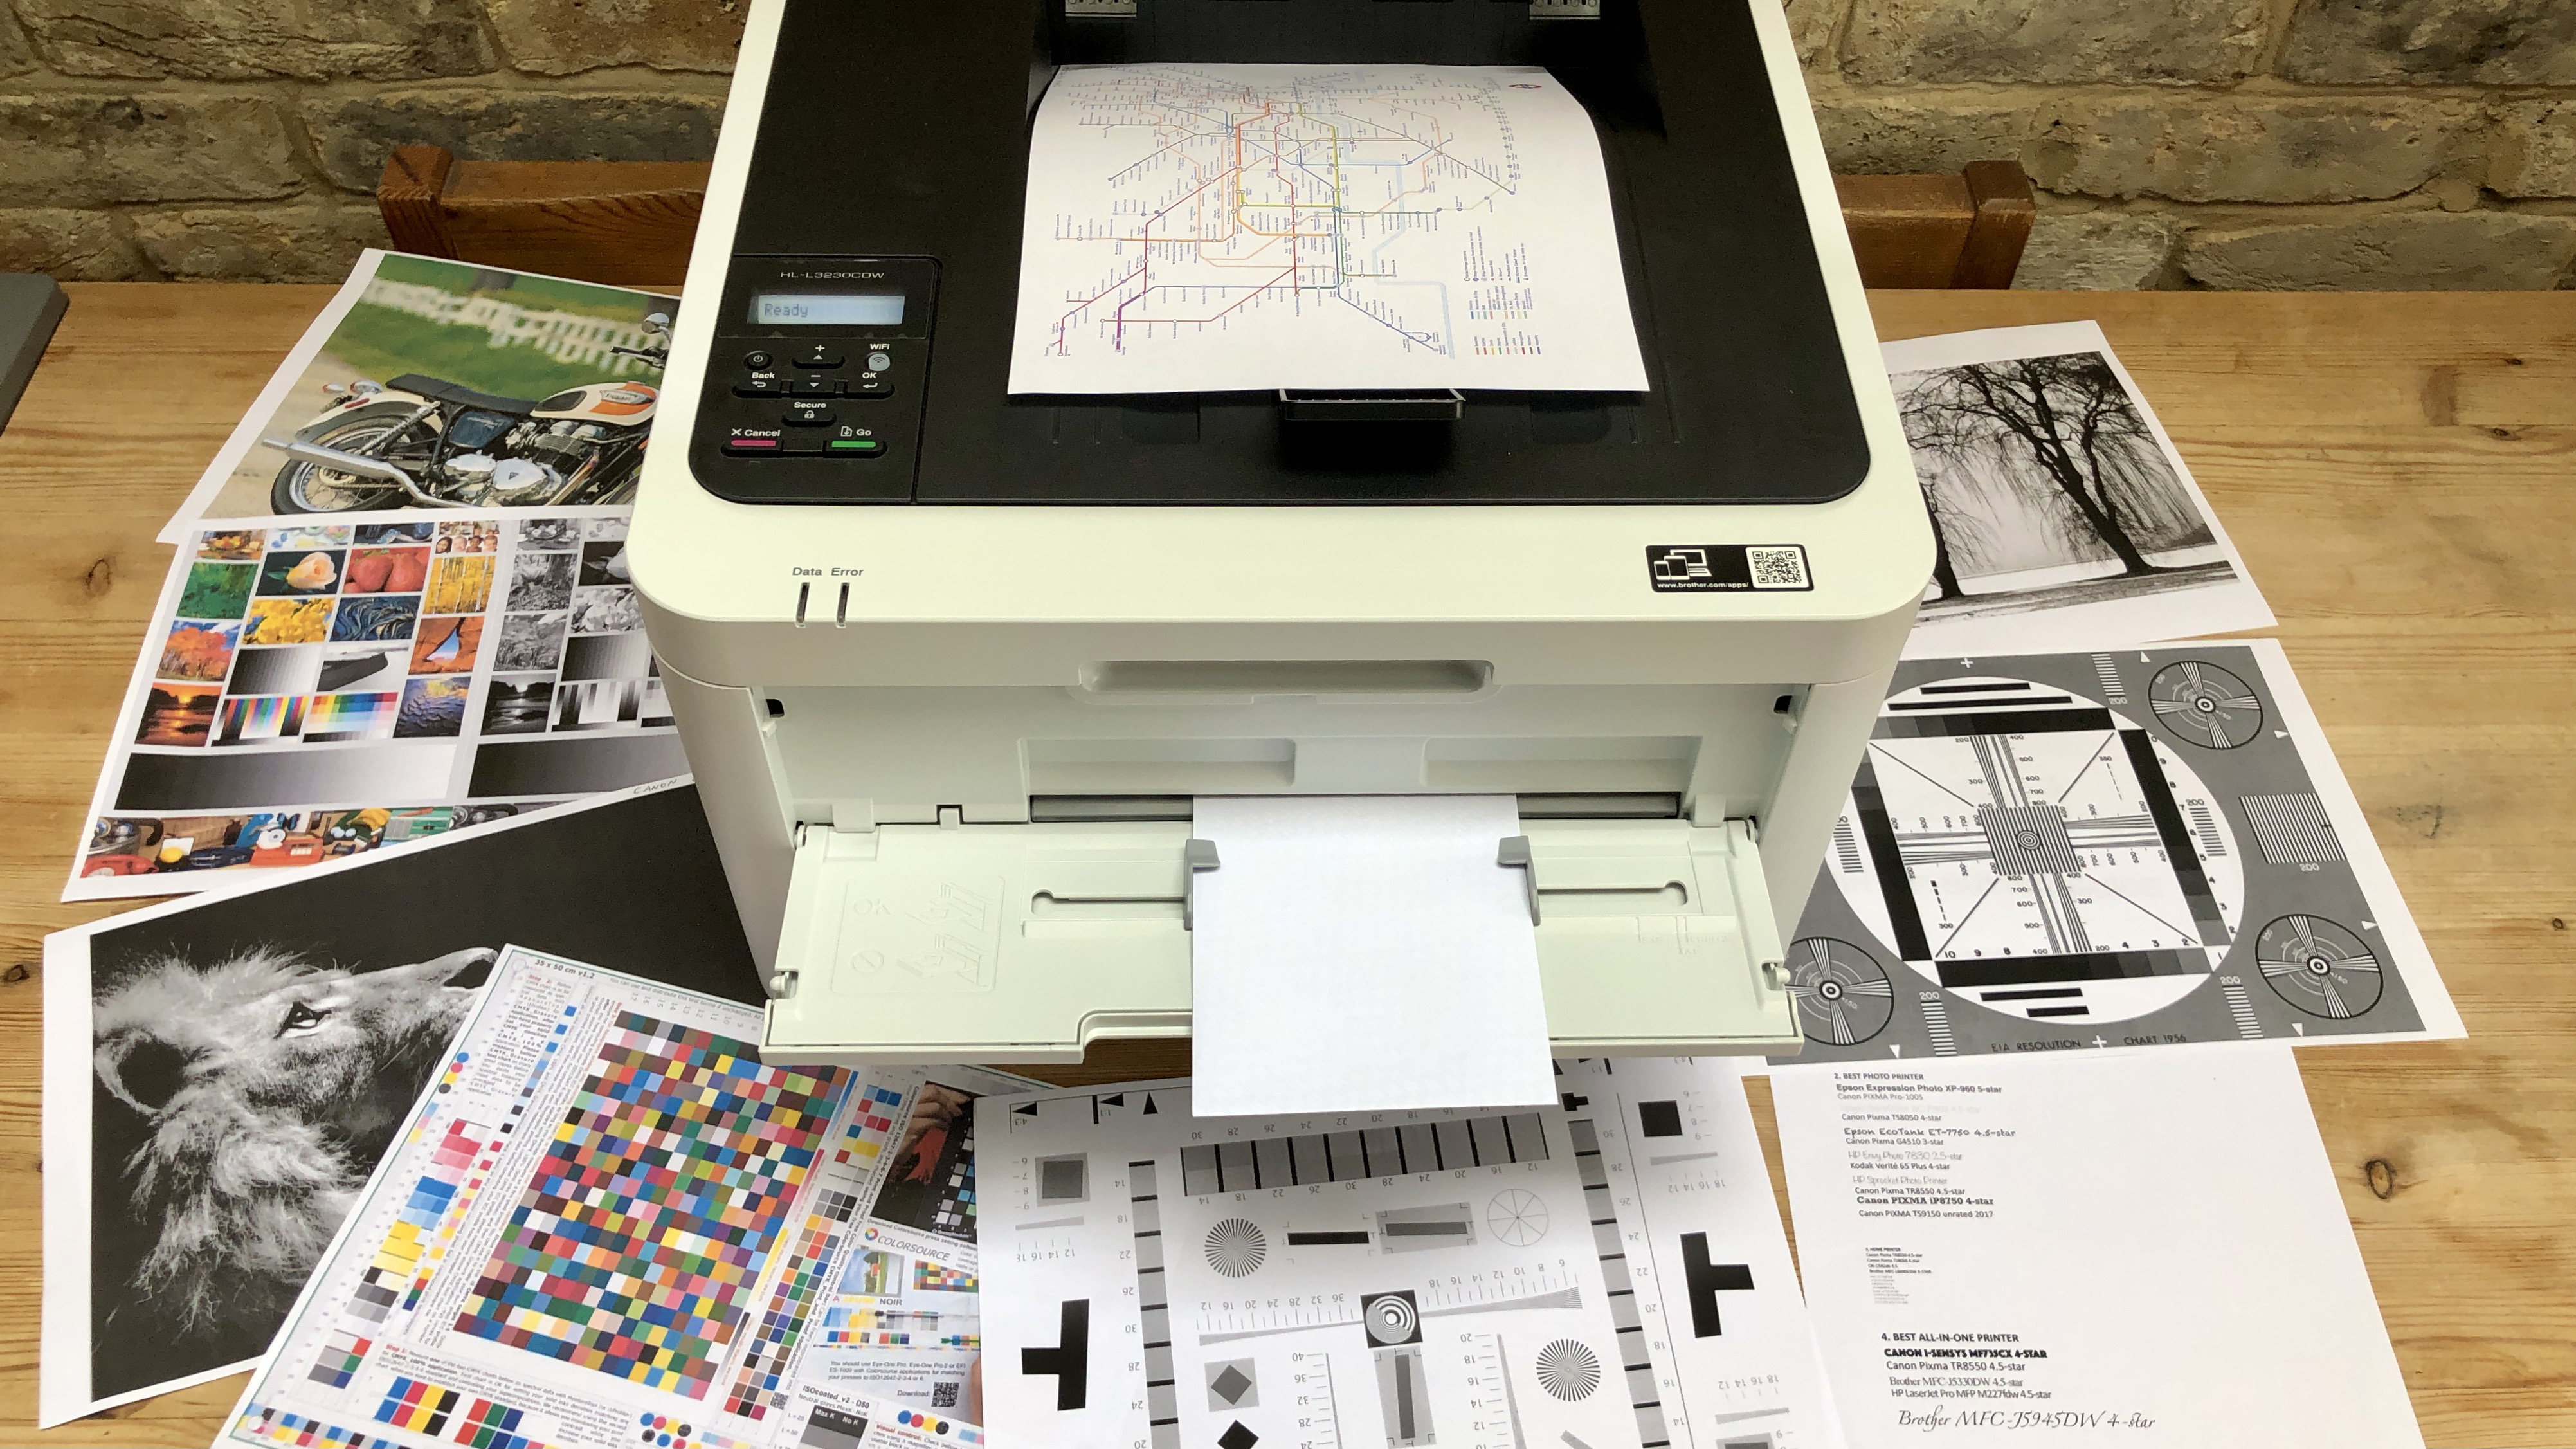 Brother HL-L3230CDW Printer Review 2023: Best Budget Color Laser Printer?  🖨️🔥 